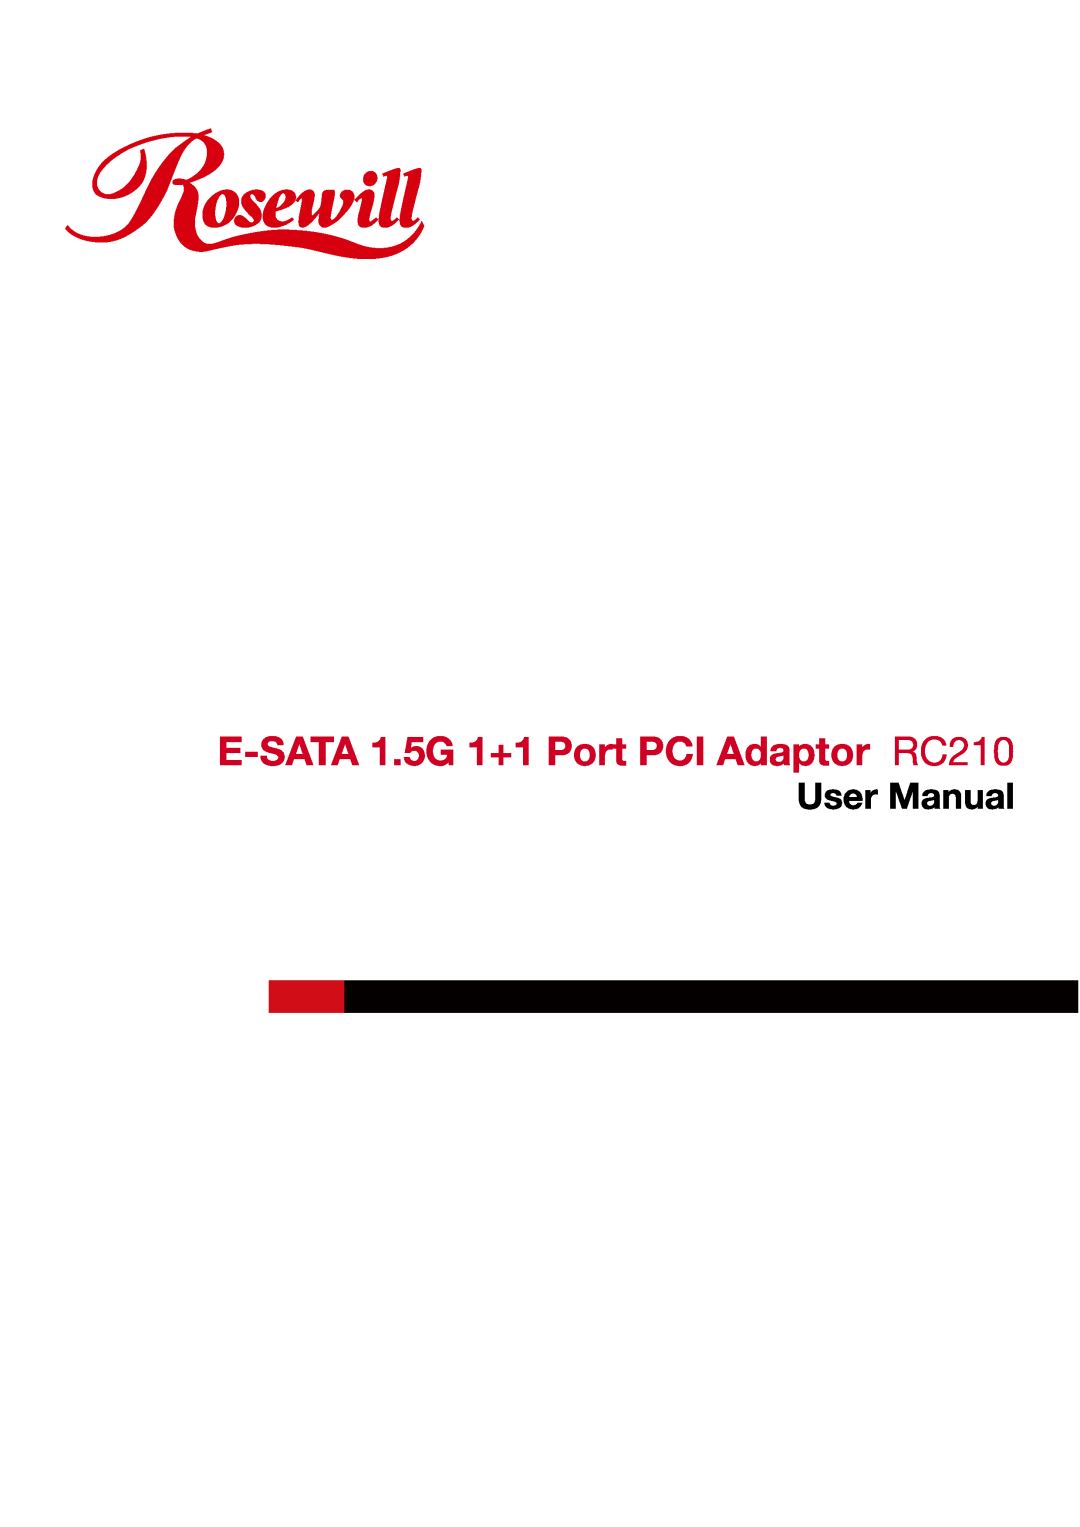 Rosewill user manual E-SATA 1.5G 1+1 Port PCI Adaptor RC210, User Manual 